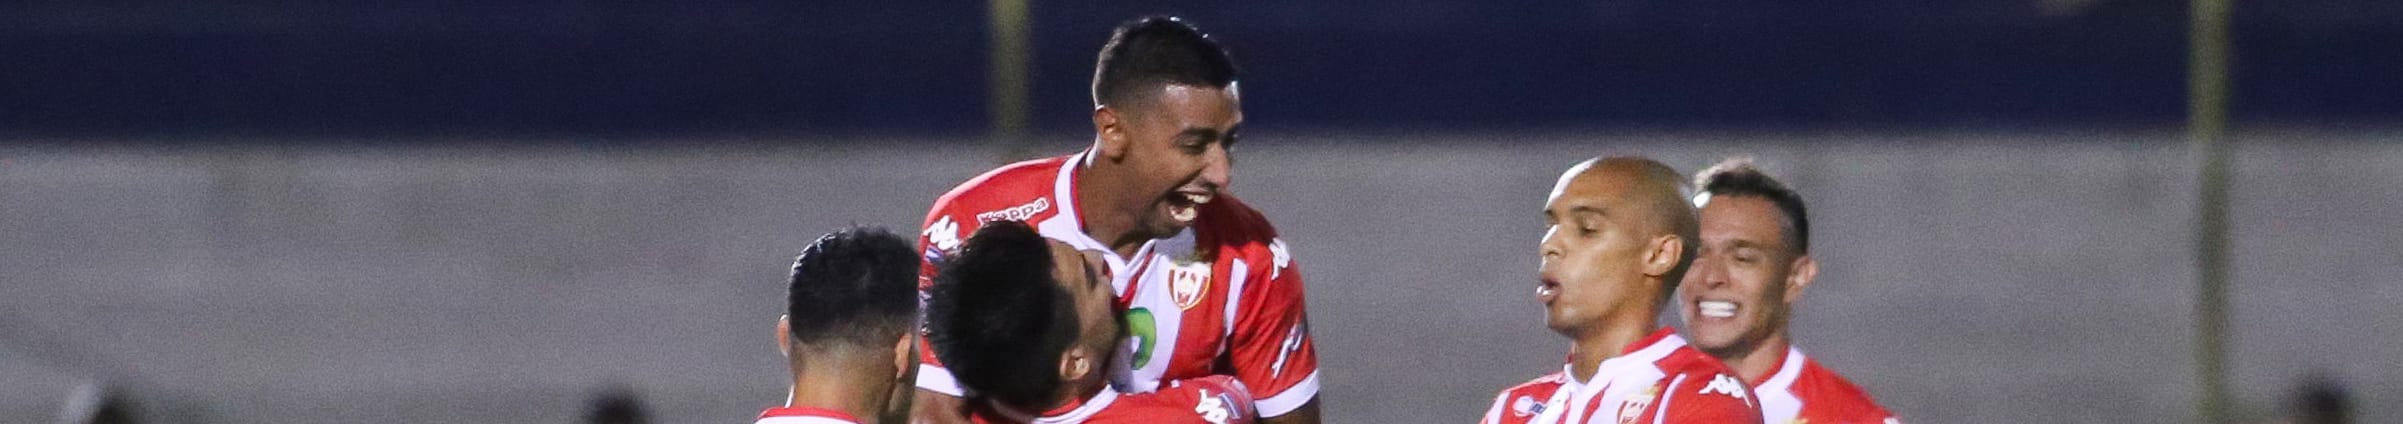 Real Estelí-Diriangén, spareggio nel Clásico per un posto in semifinale nei playoff